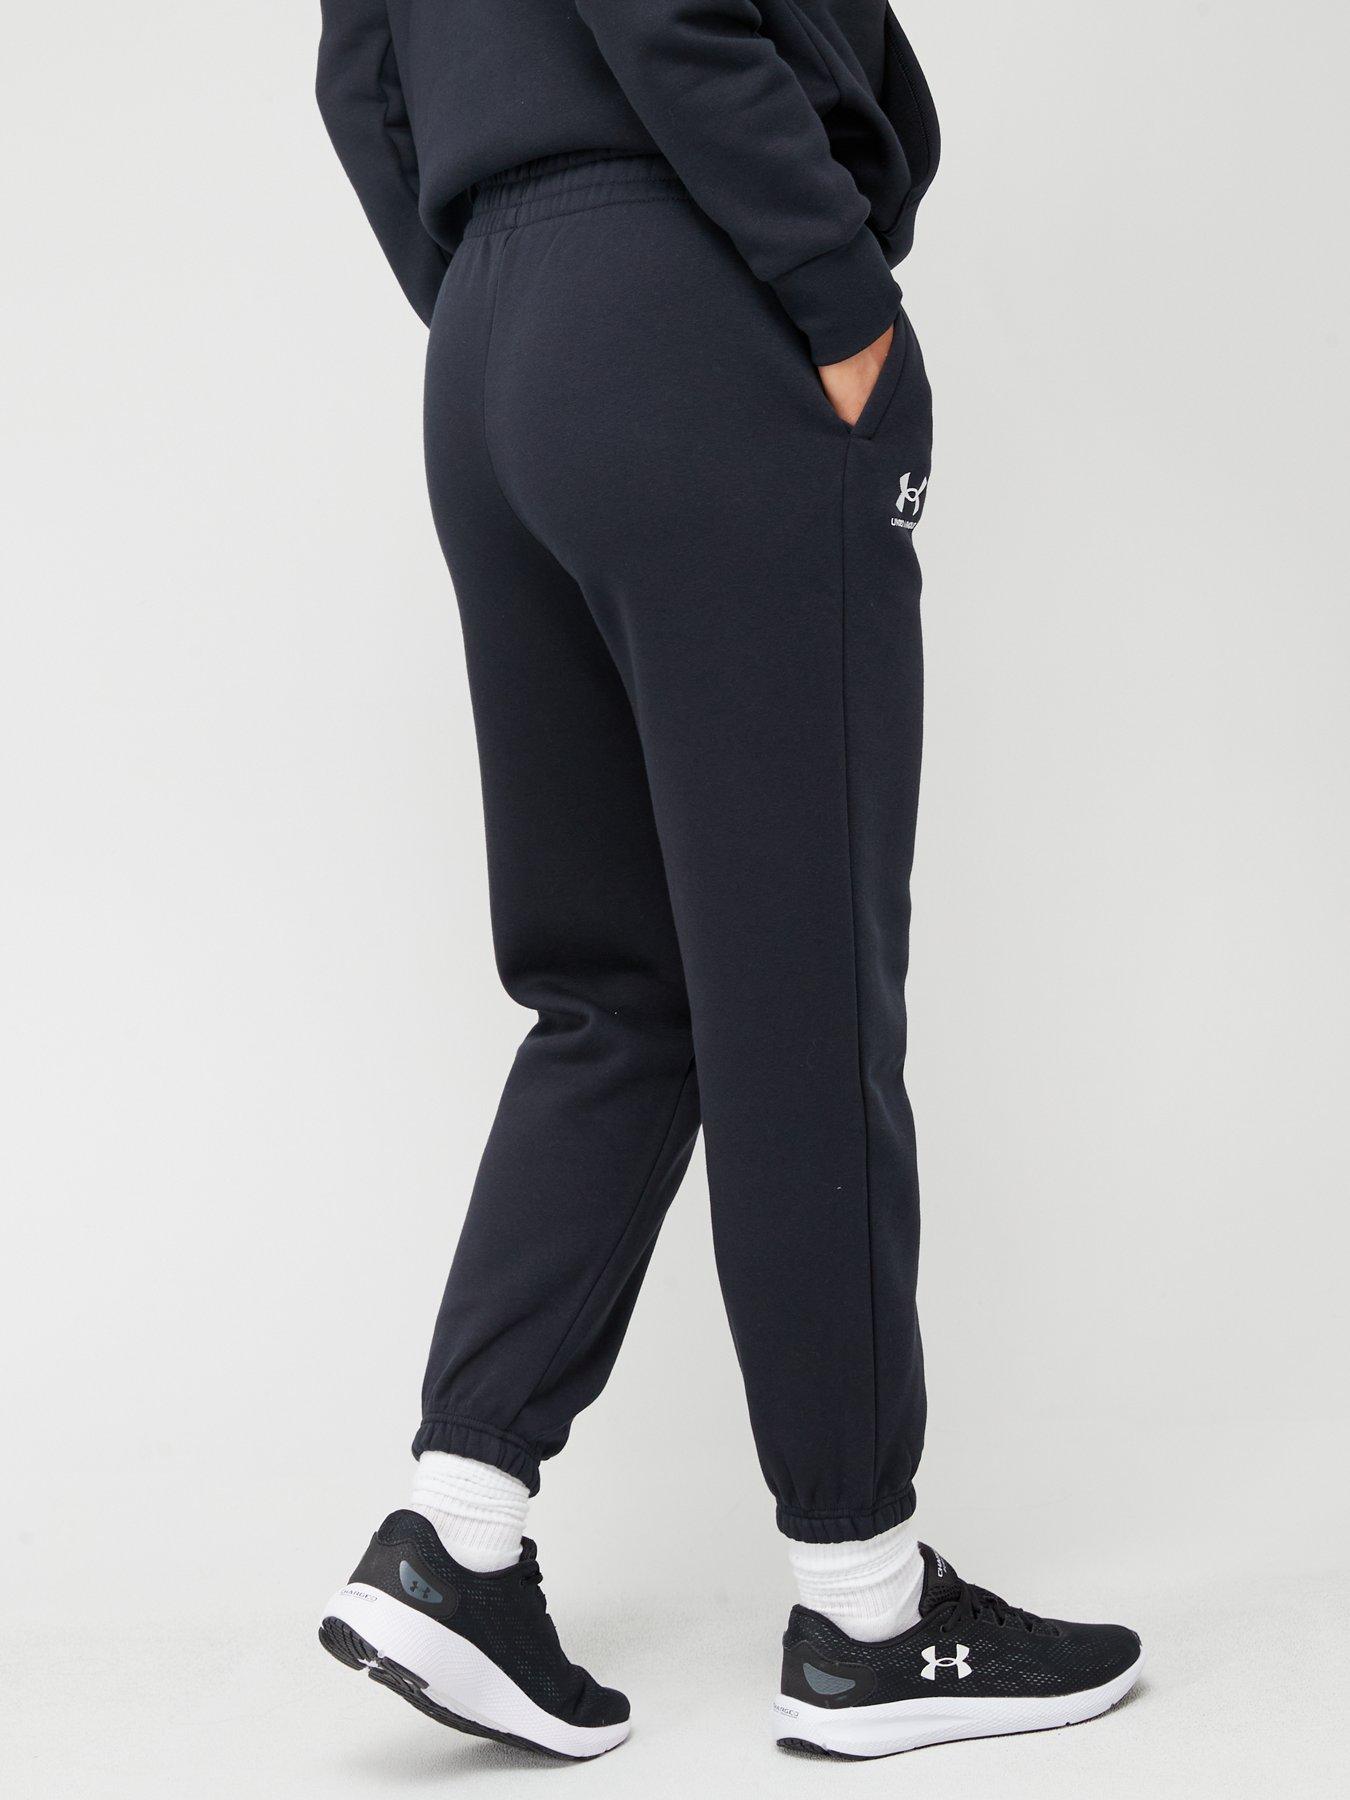 UNDER ARMOUR - Pantalon Essential Fleece Joggers Femme Black/White